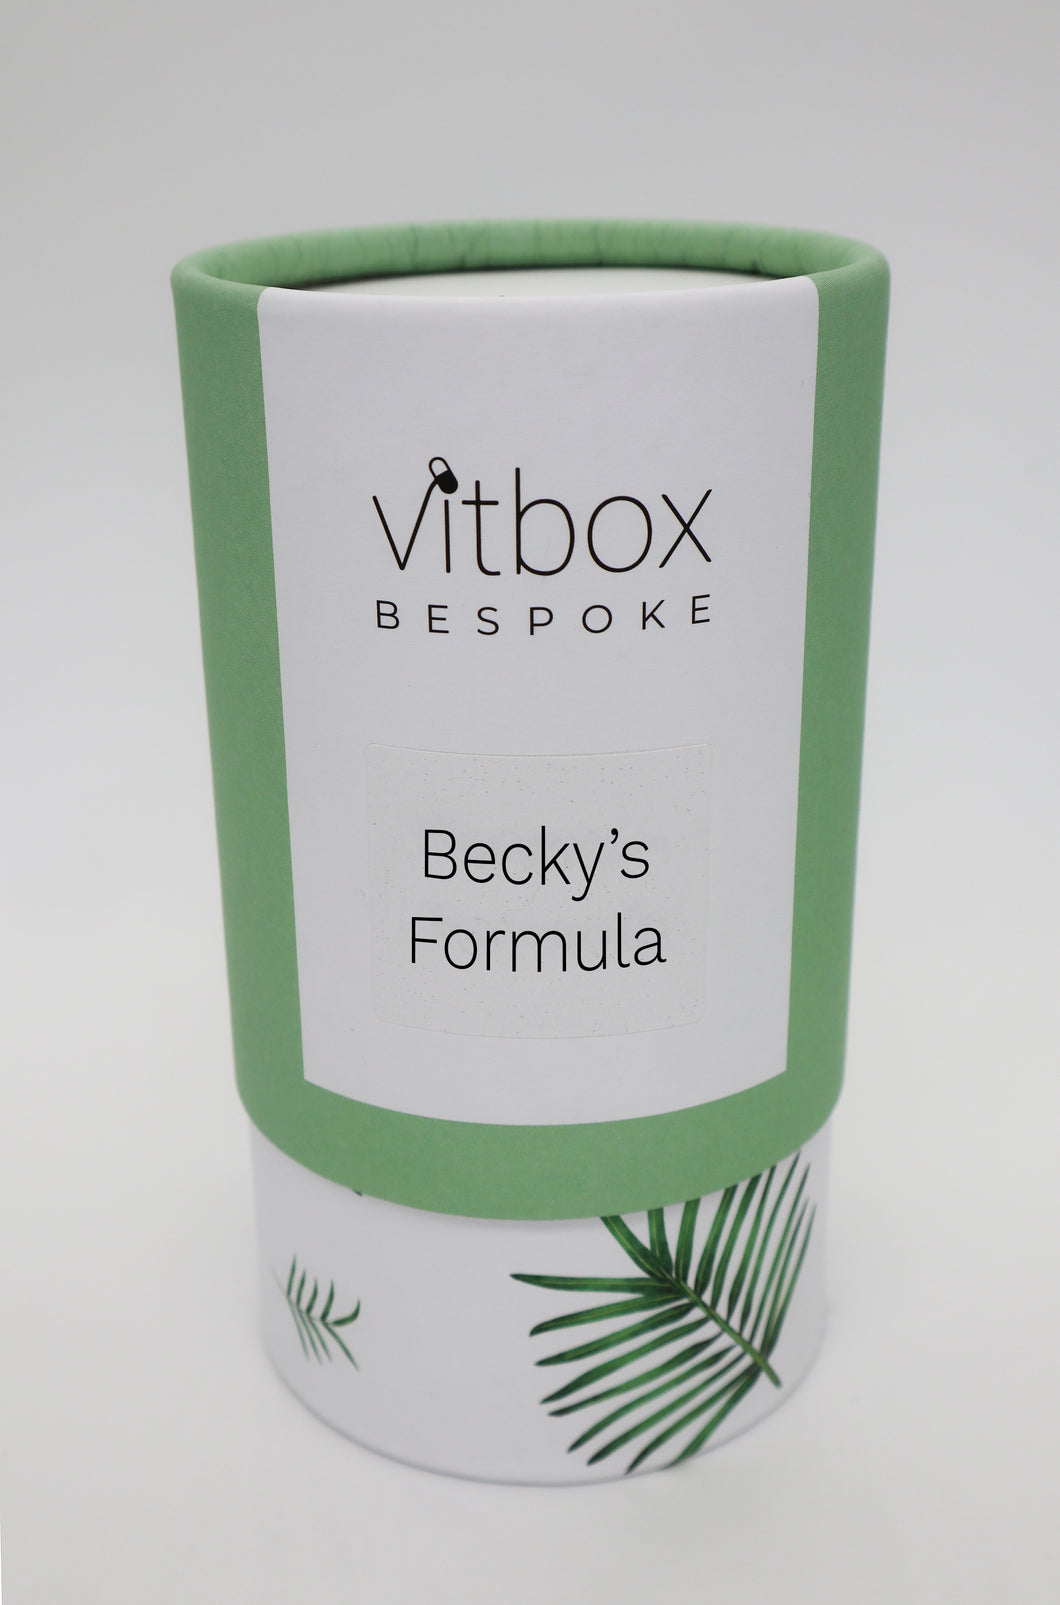 Becky's Vitbox Bespoke